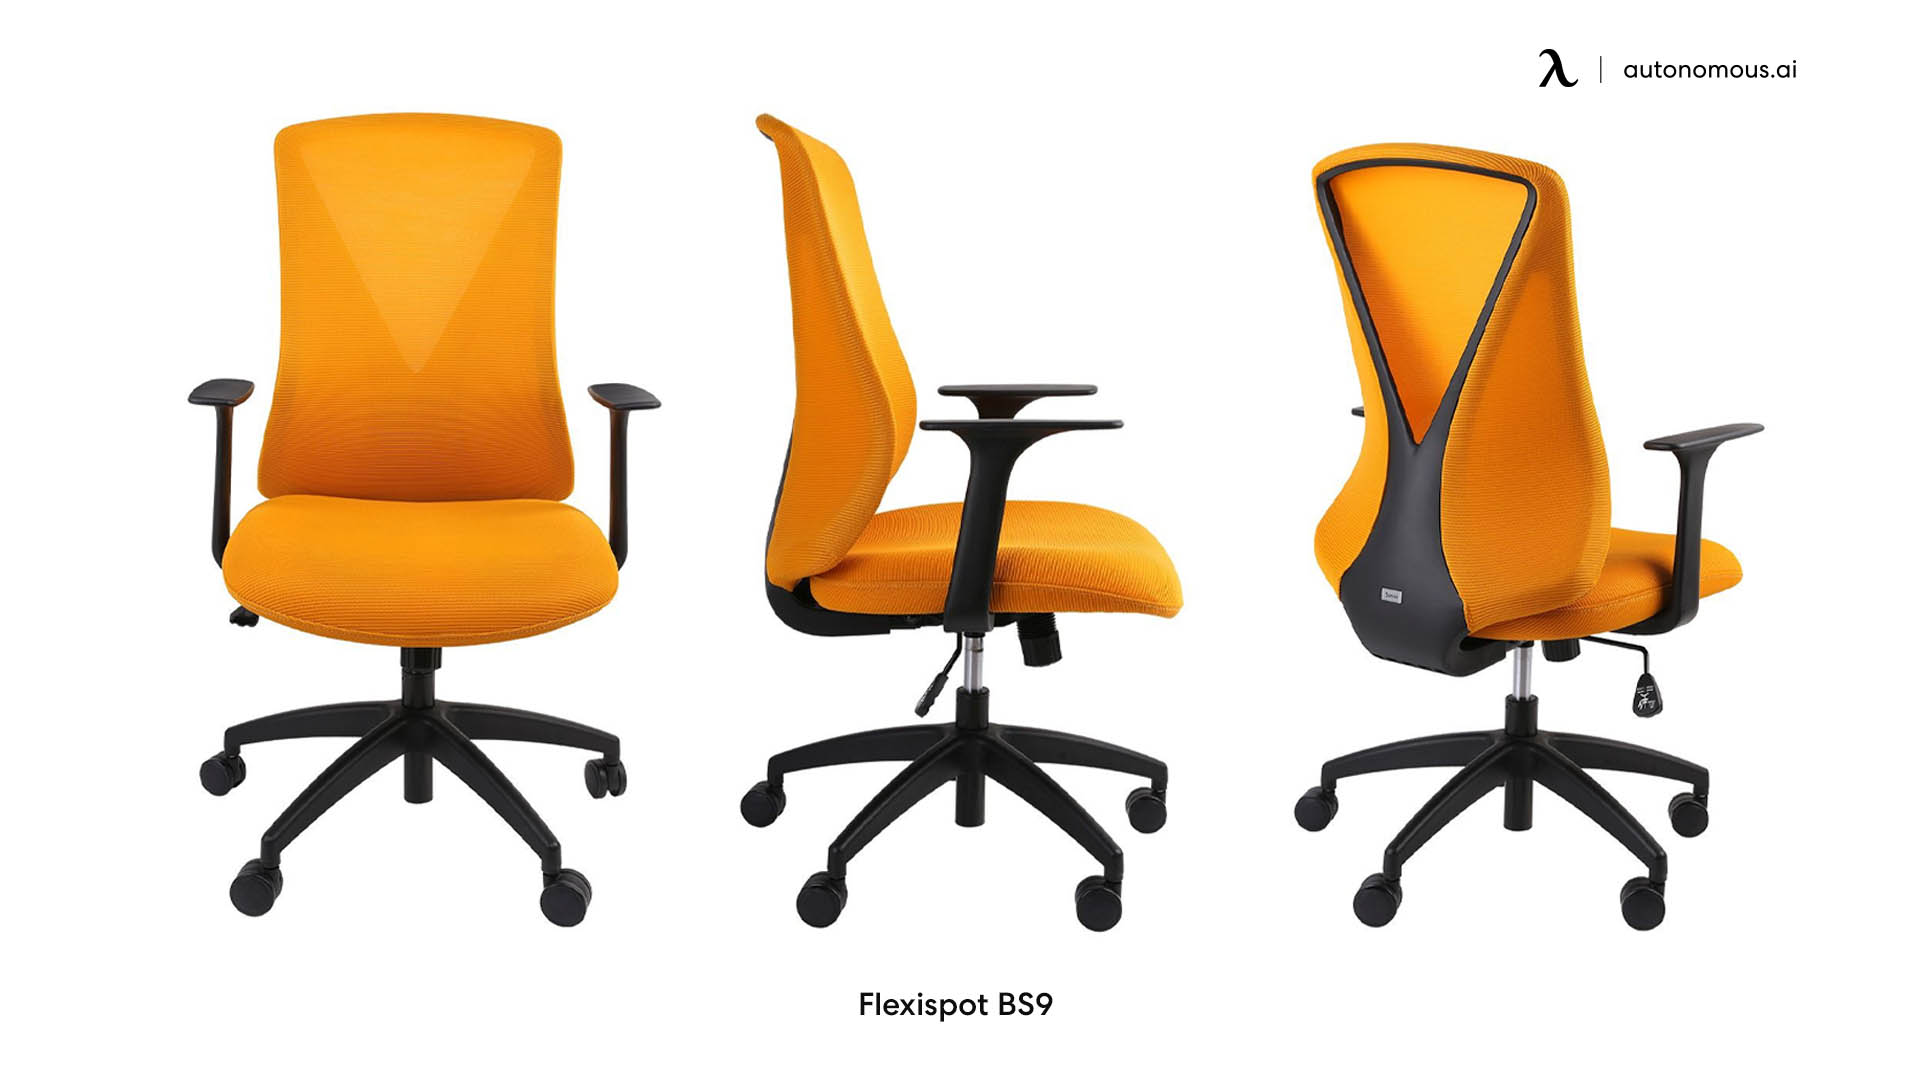 Flexispot BS9 lumbar support chair